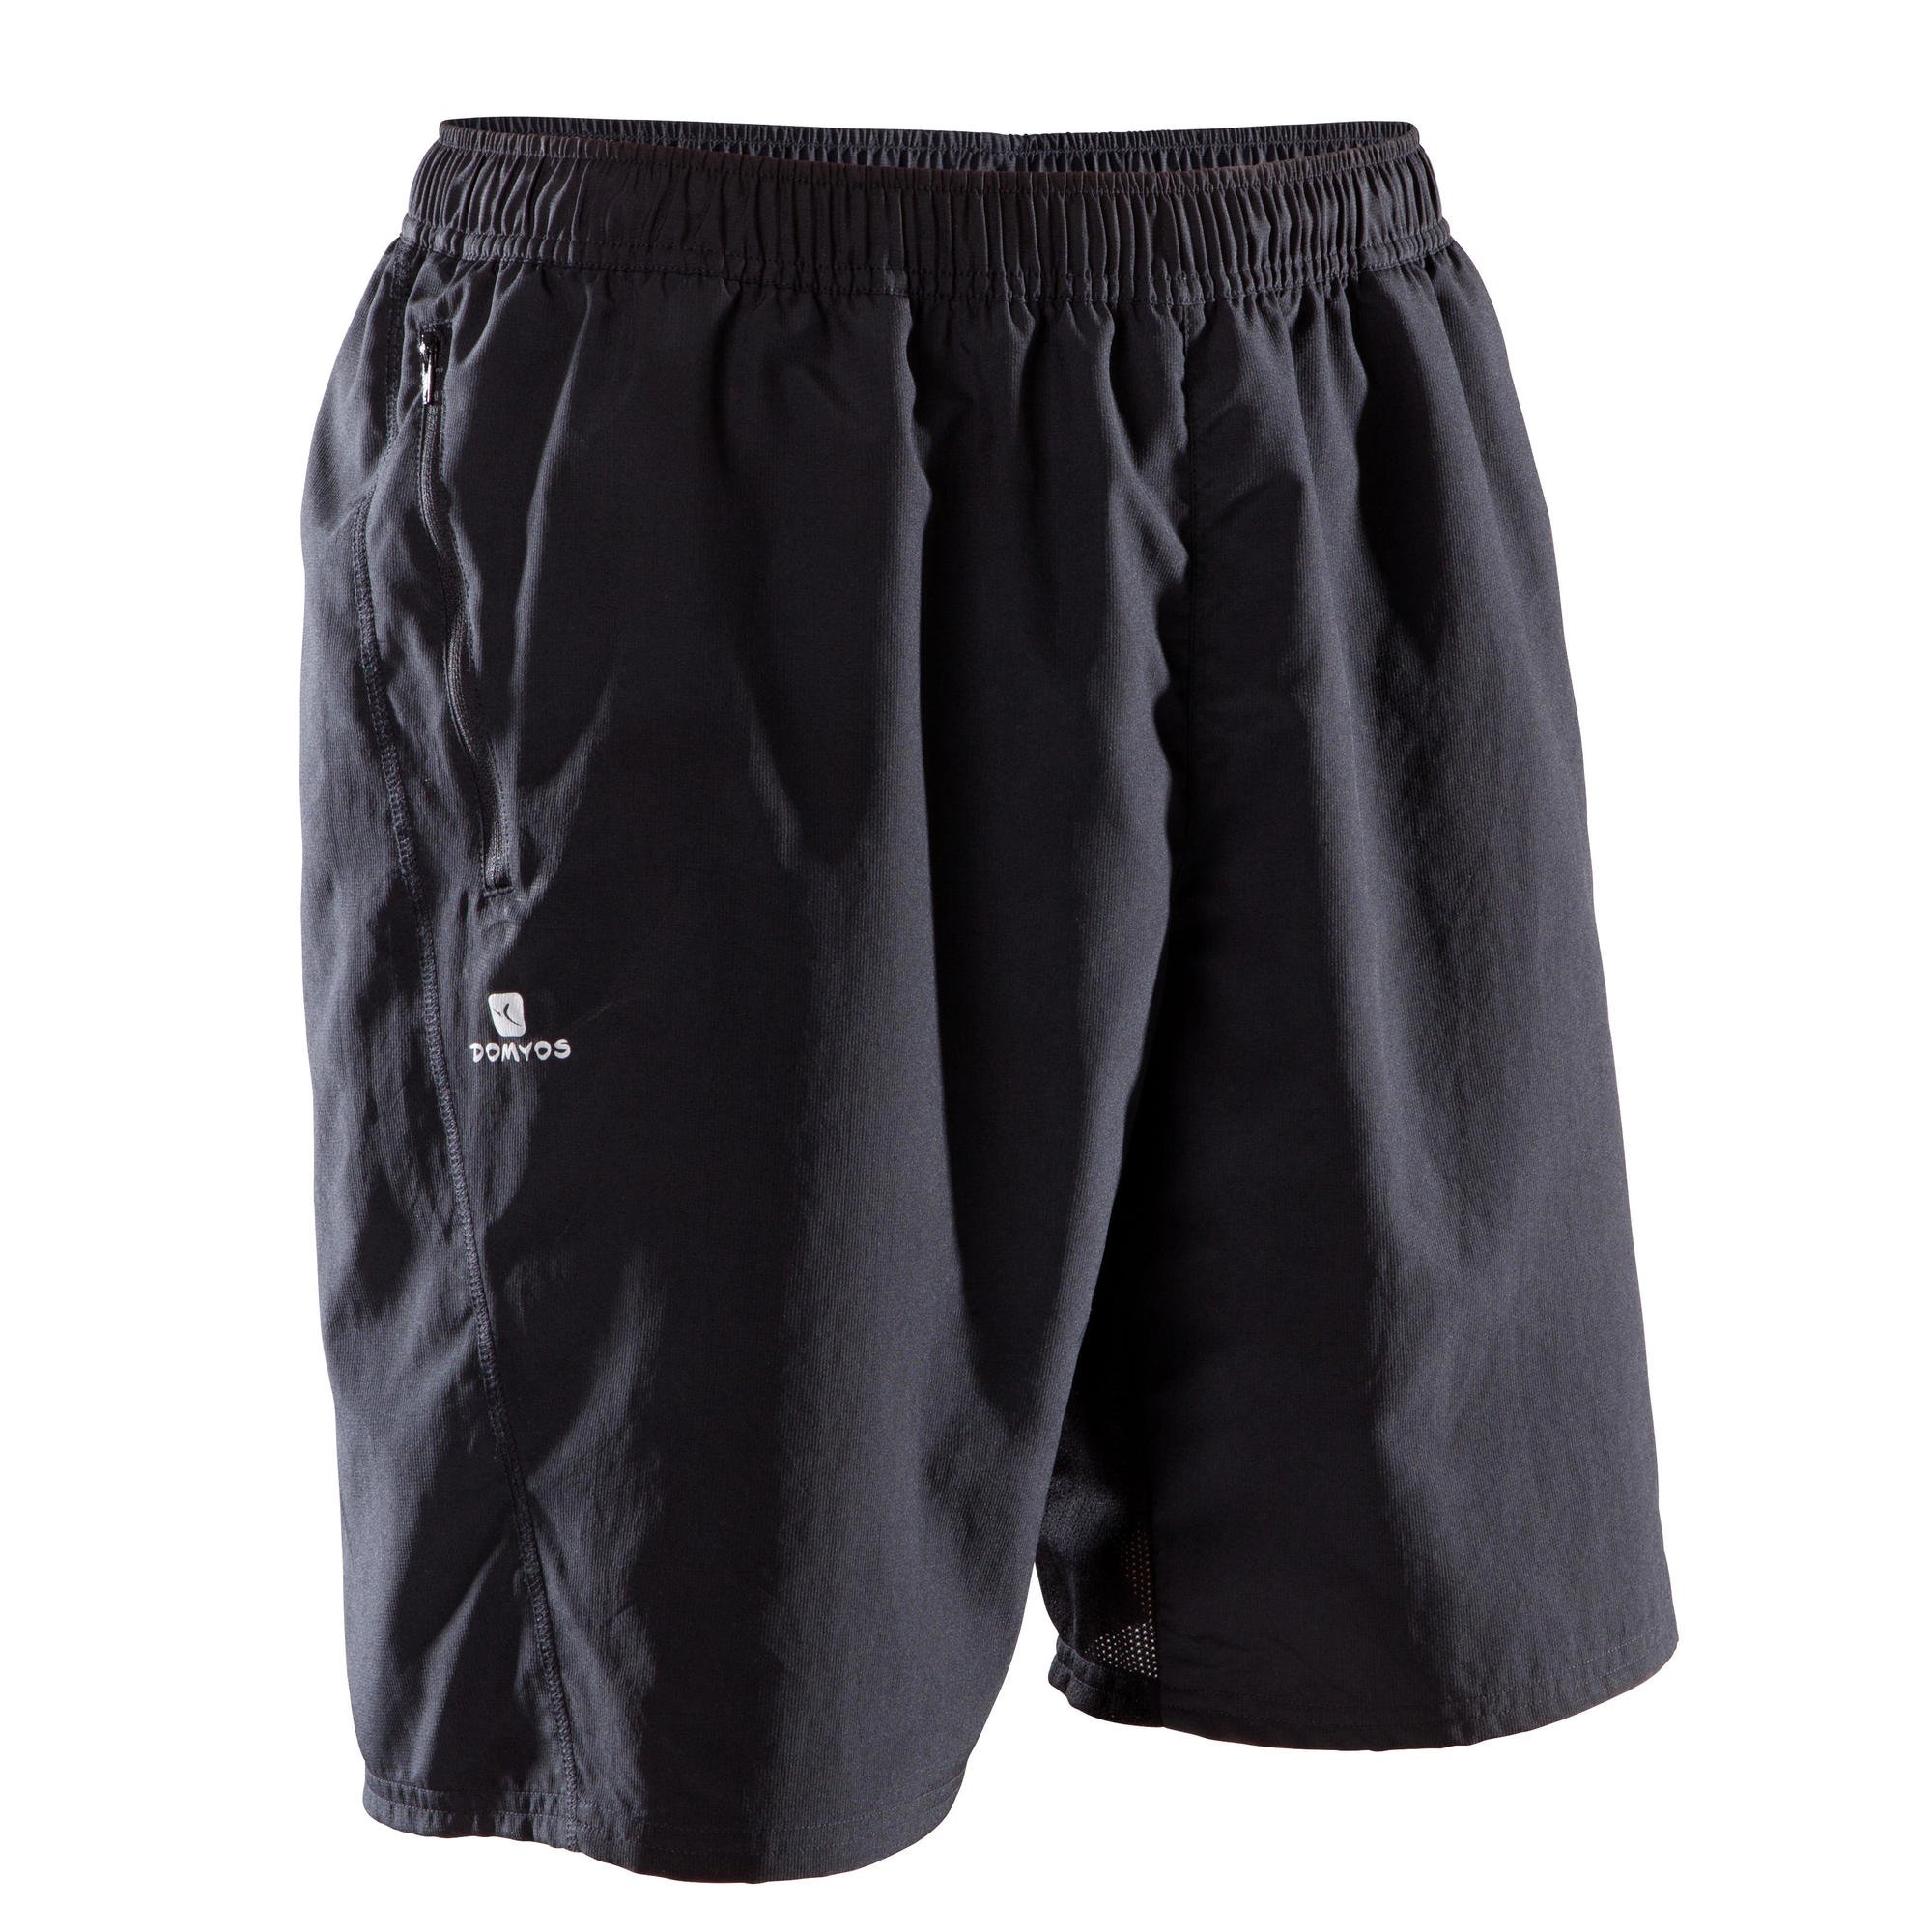 decathlon domyos shorts